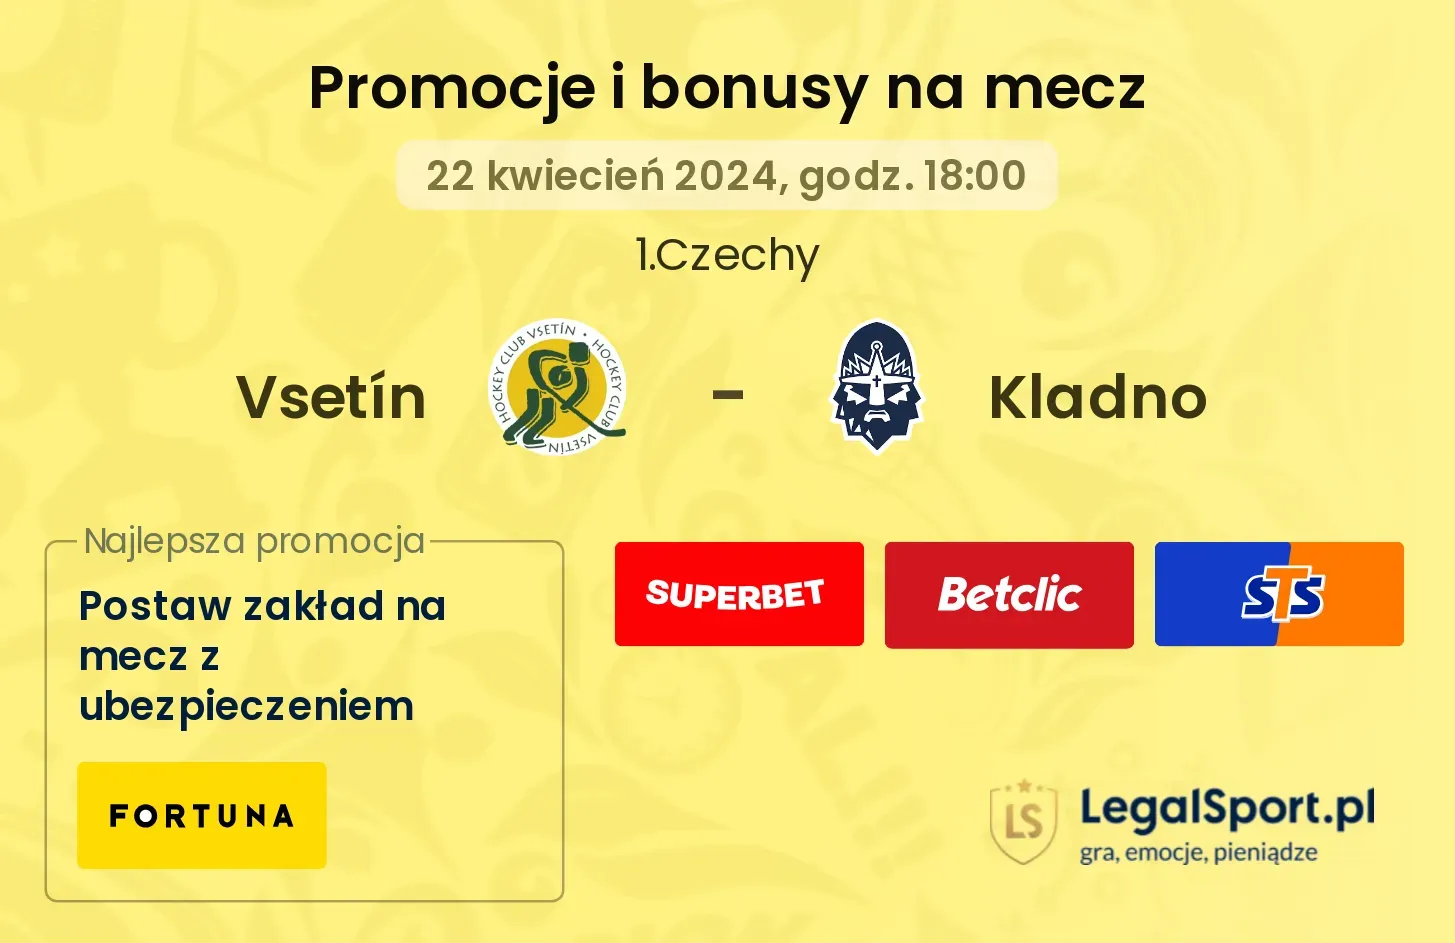 Vsetín - Kladno promocje bonusy na mecz